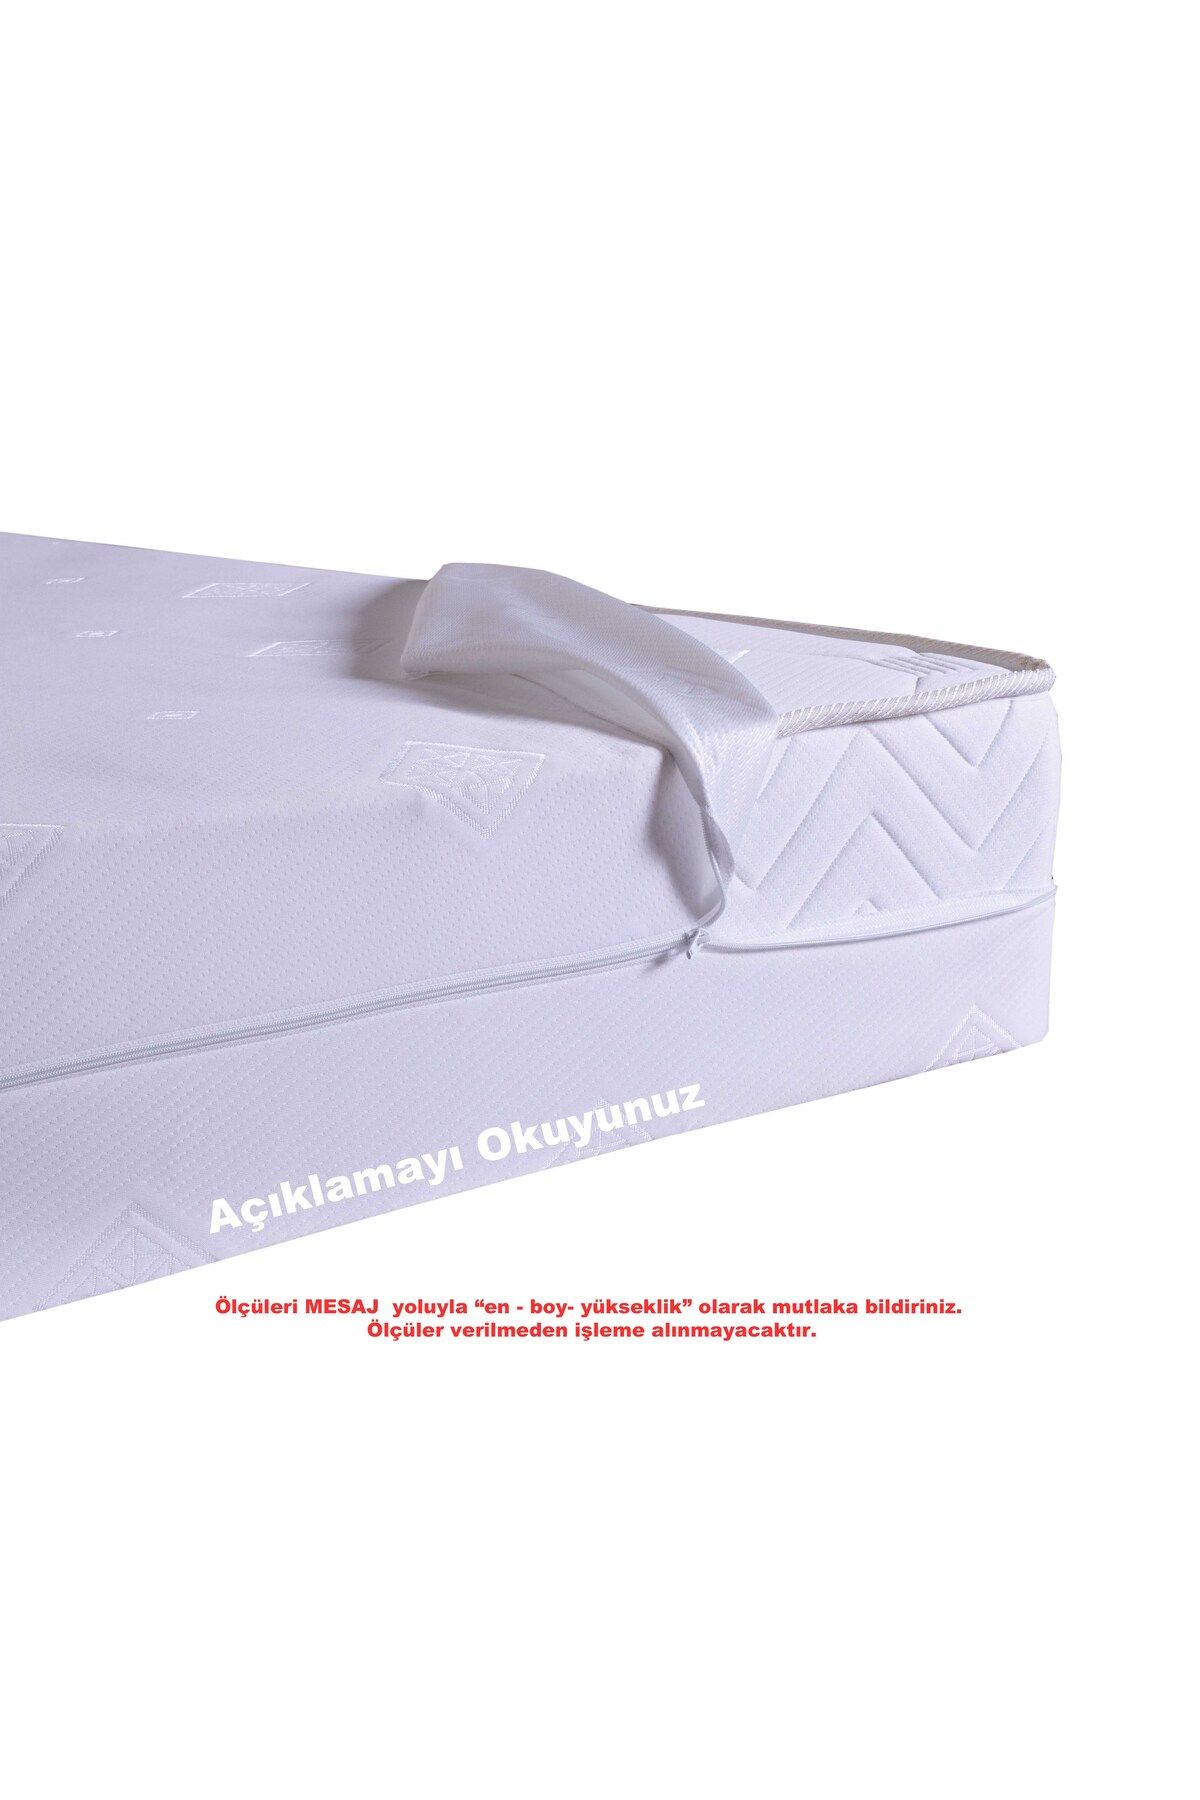 Artex Kılıf 100x200 Yatak Kılıfı Koruyucusu Fermuarlı Kılıf Yatağa Özel Üretim